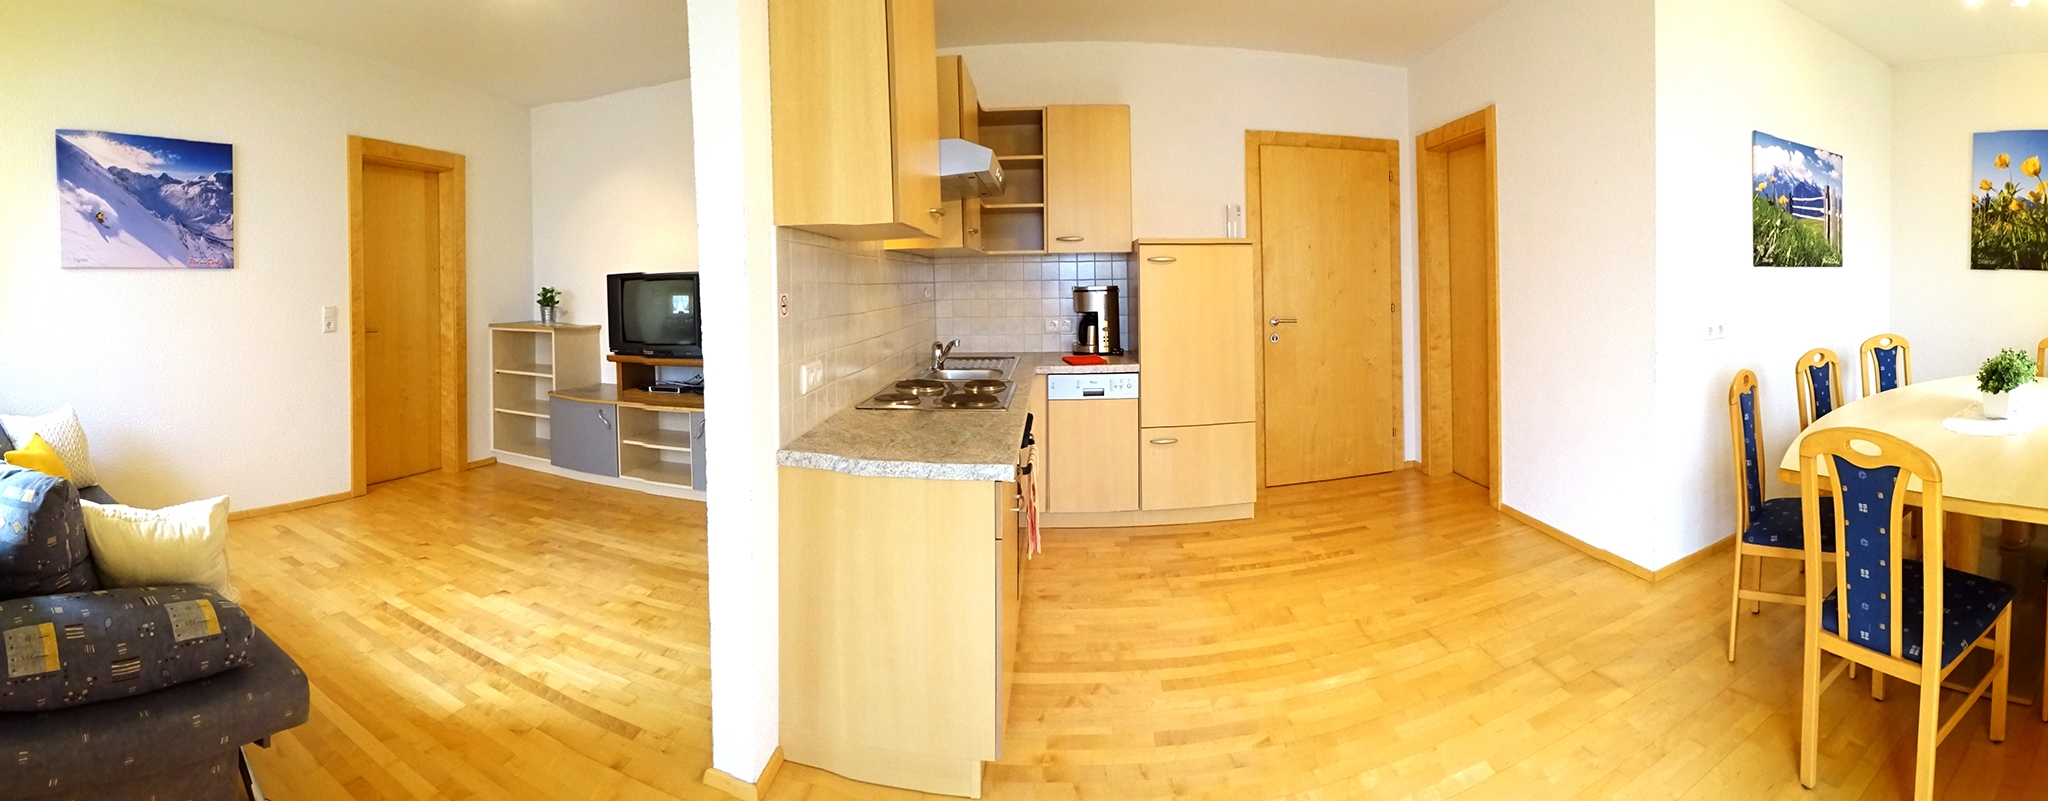 Appartementhaus Alpenjuwel: Komfort-Ferienwohnung für 7 Personen - Wohnbereich mit Essbereich und Küchenzeile